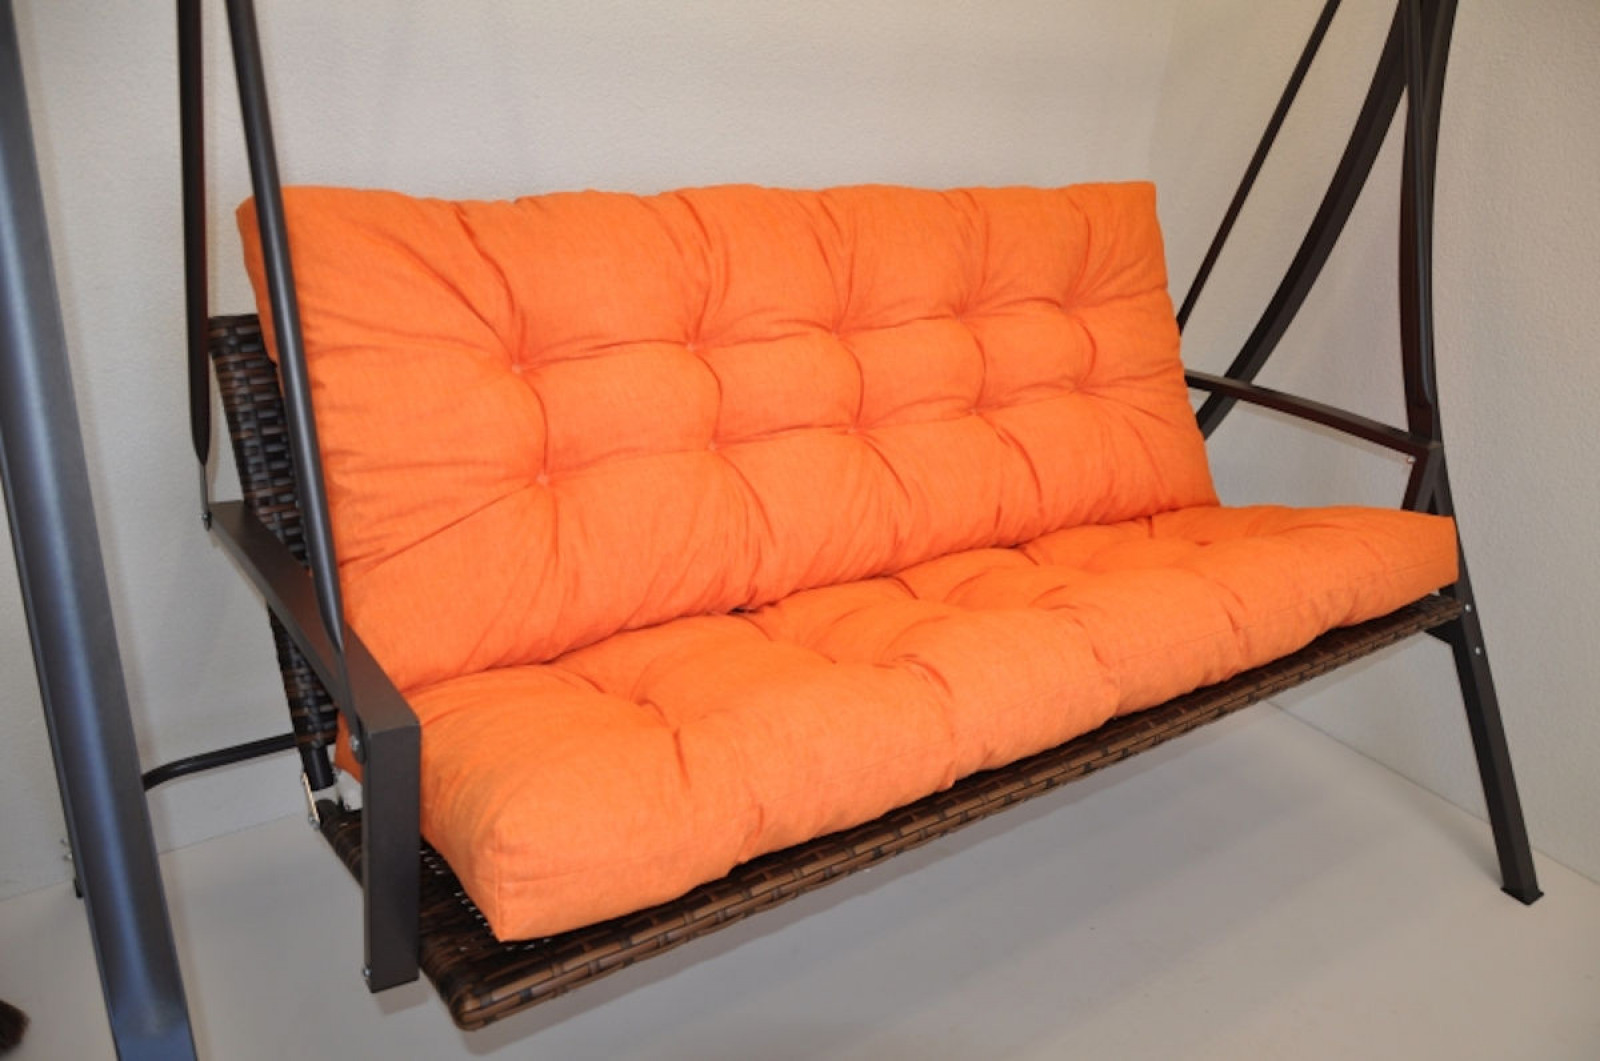 Premium Kissen , Polster für Hollywoodschaukel , Gartenbank Colore arancione (orange) , 5 Größen zur Wahl